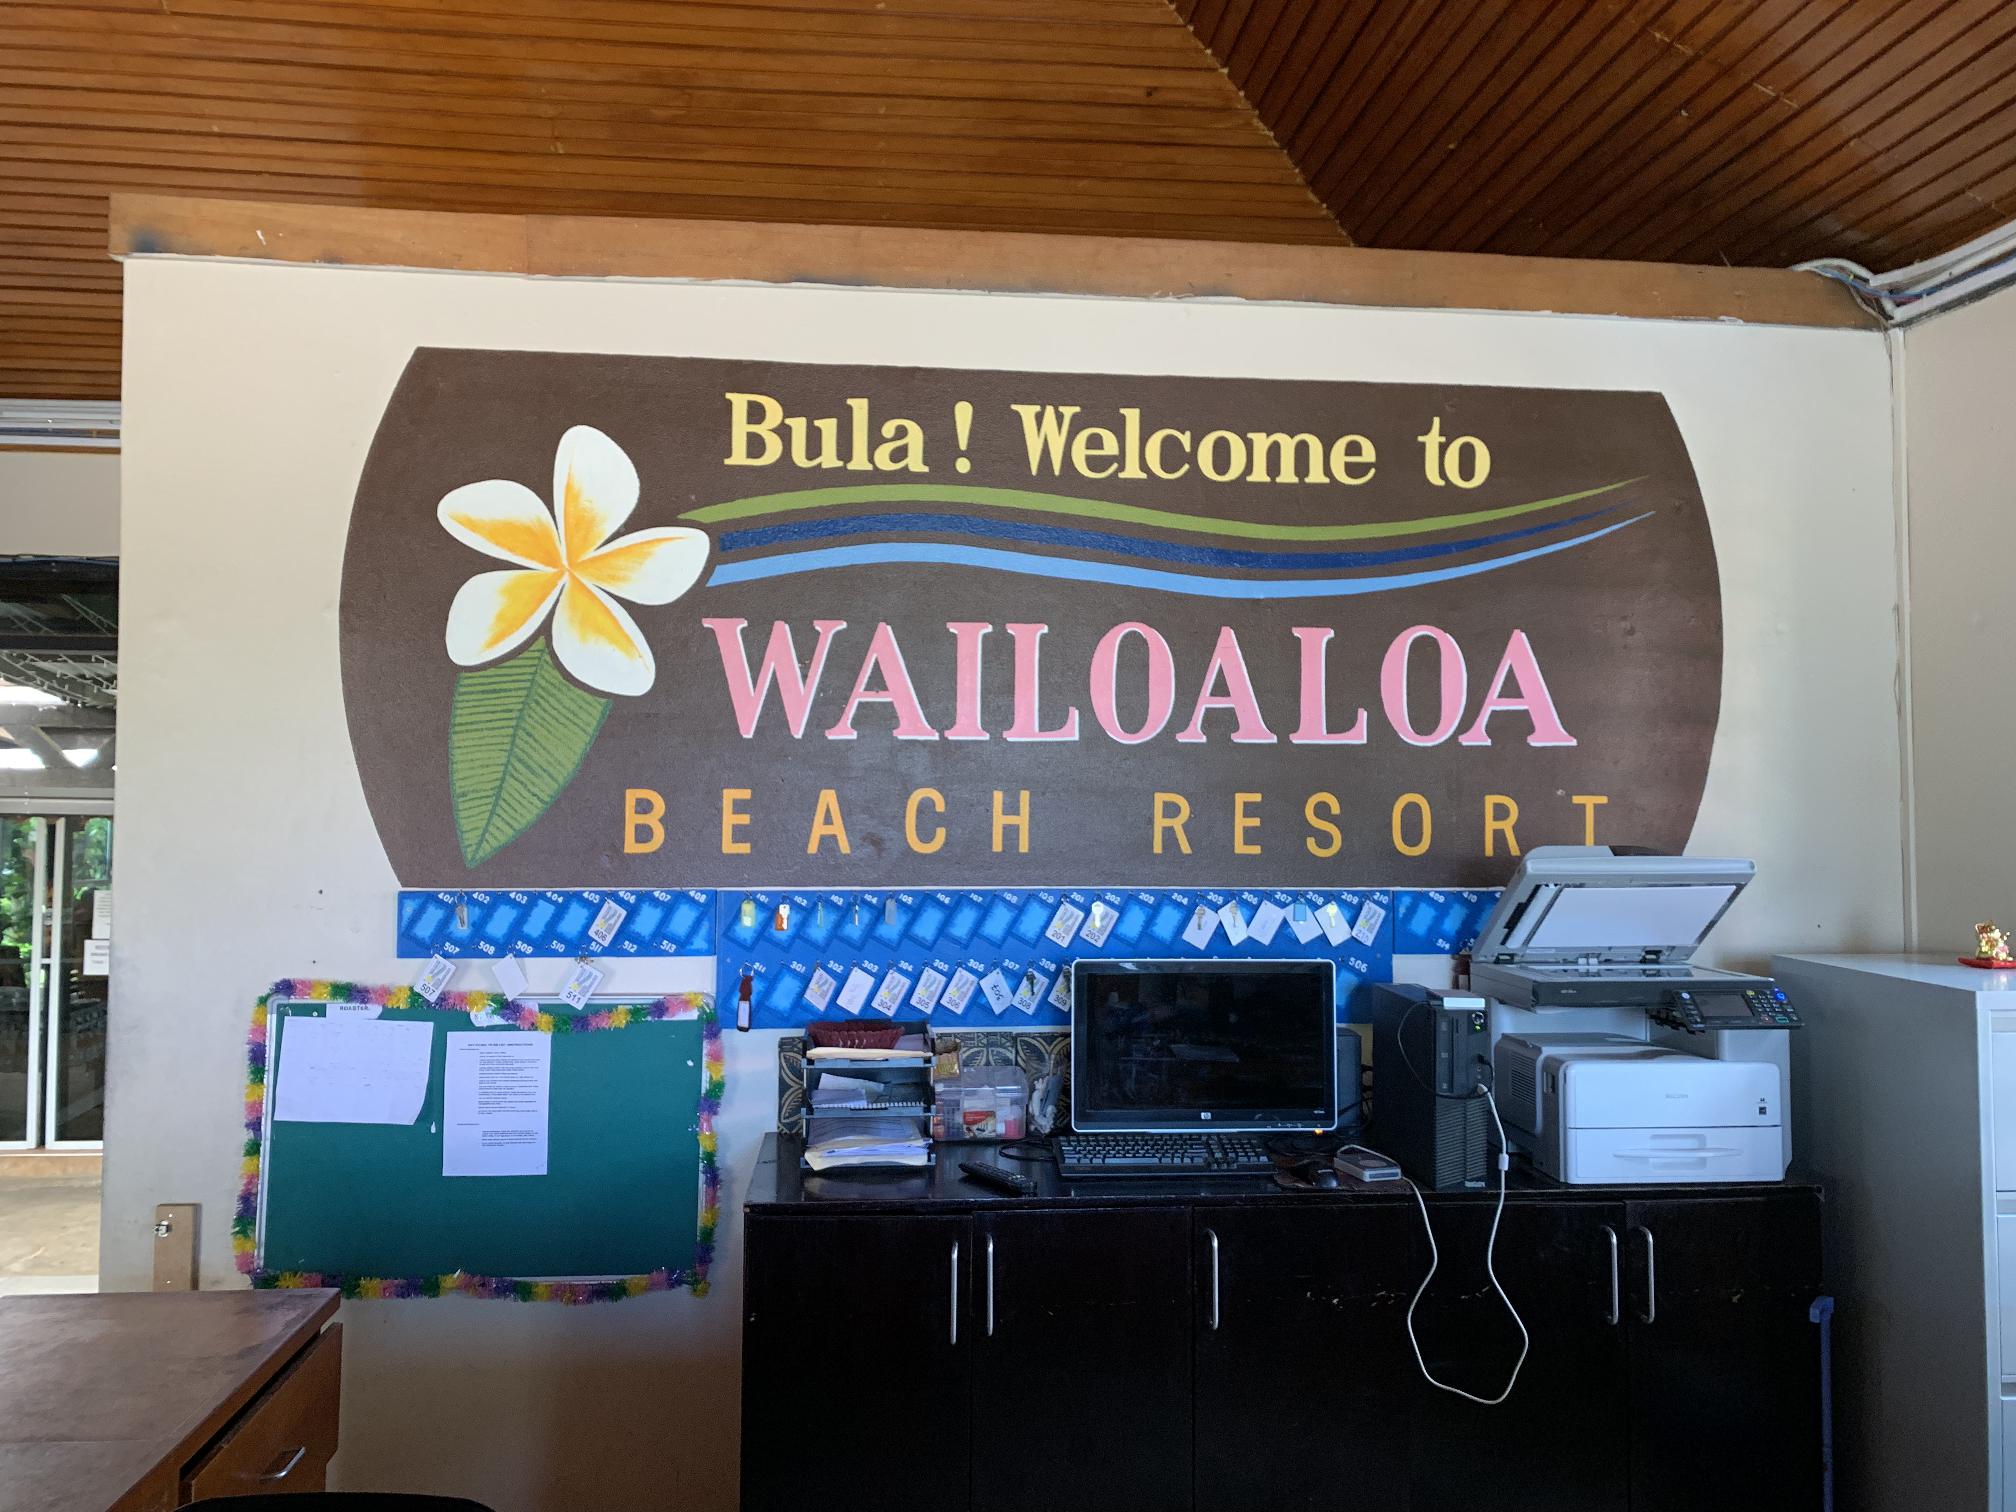 Wailoaloa Beach Resort